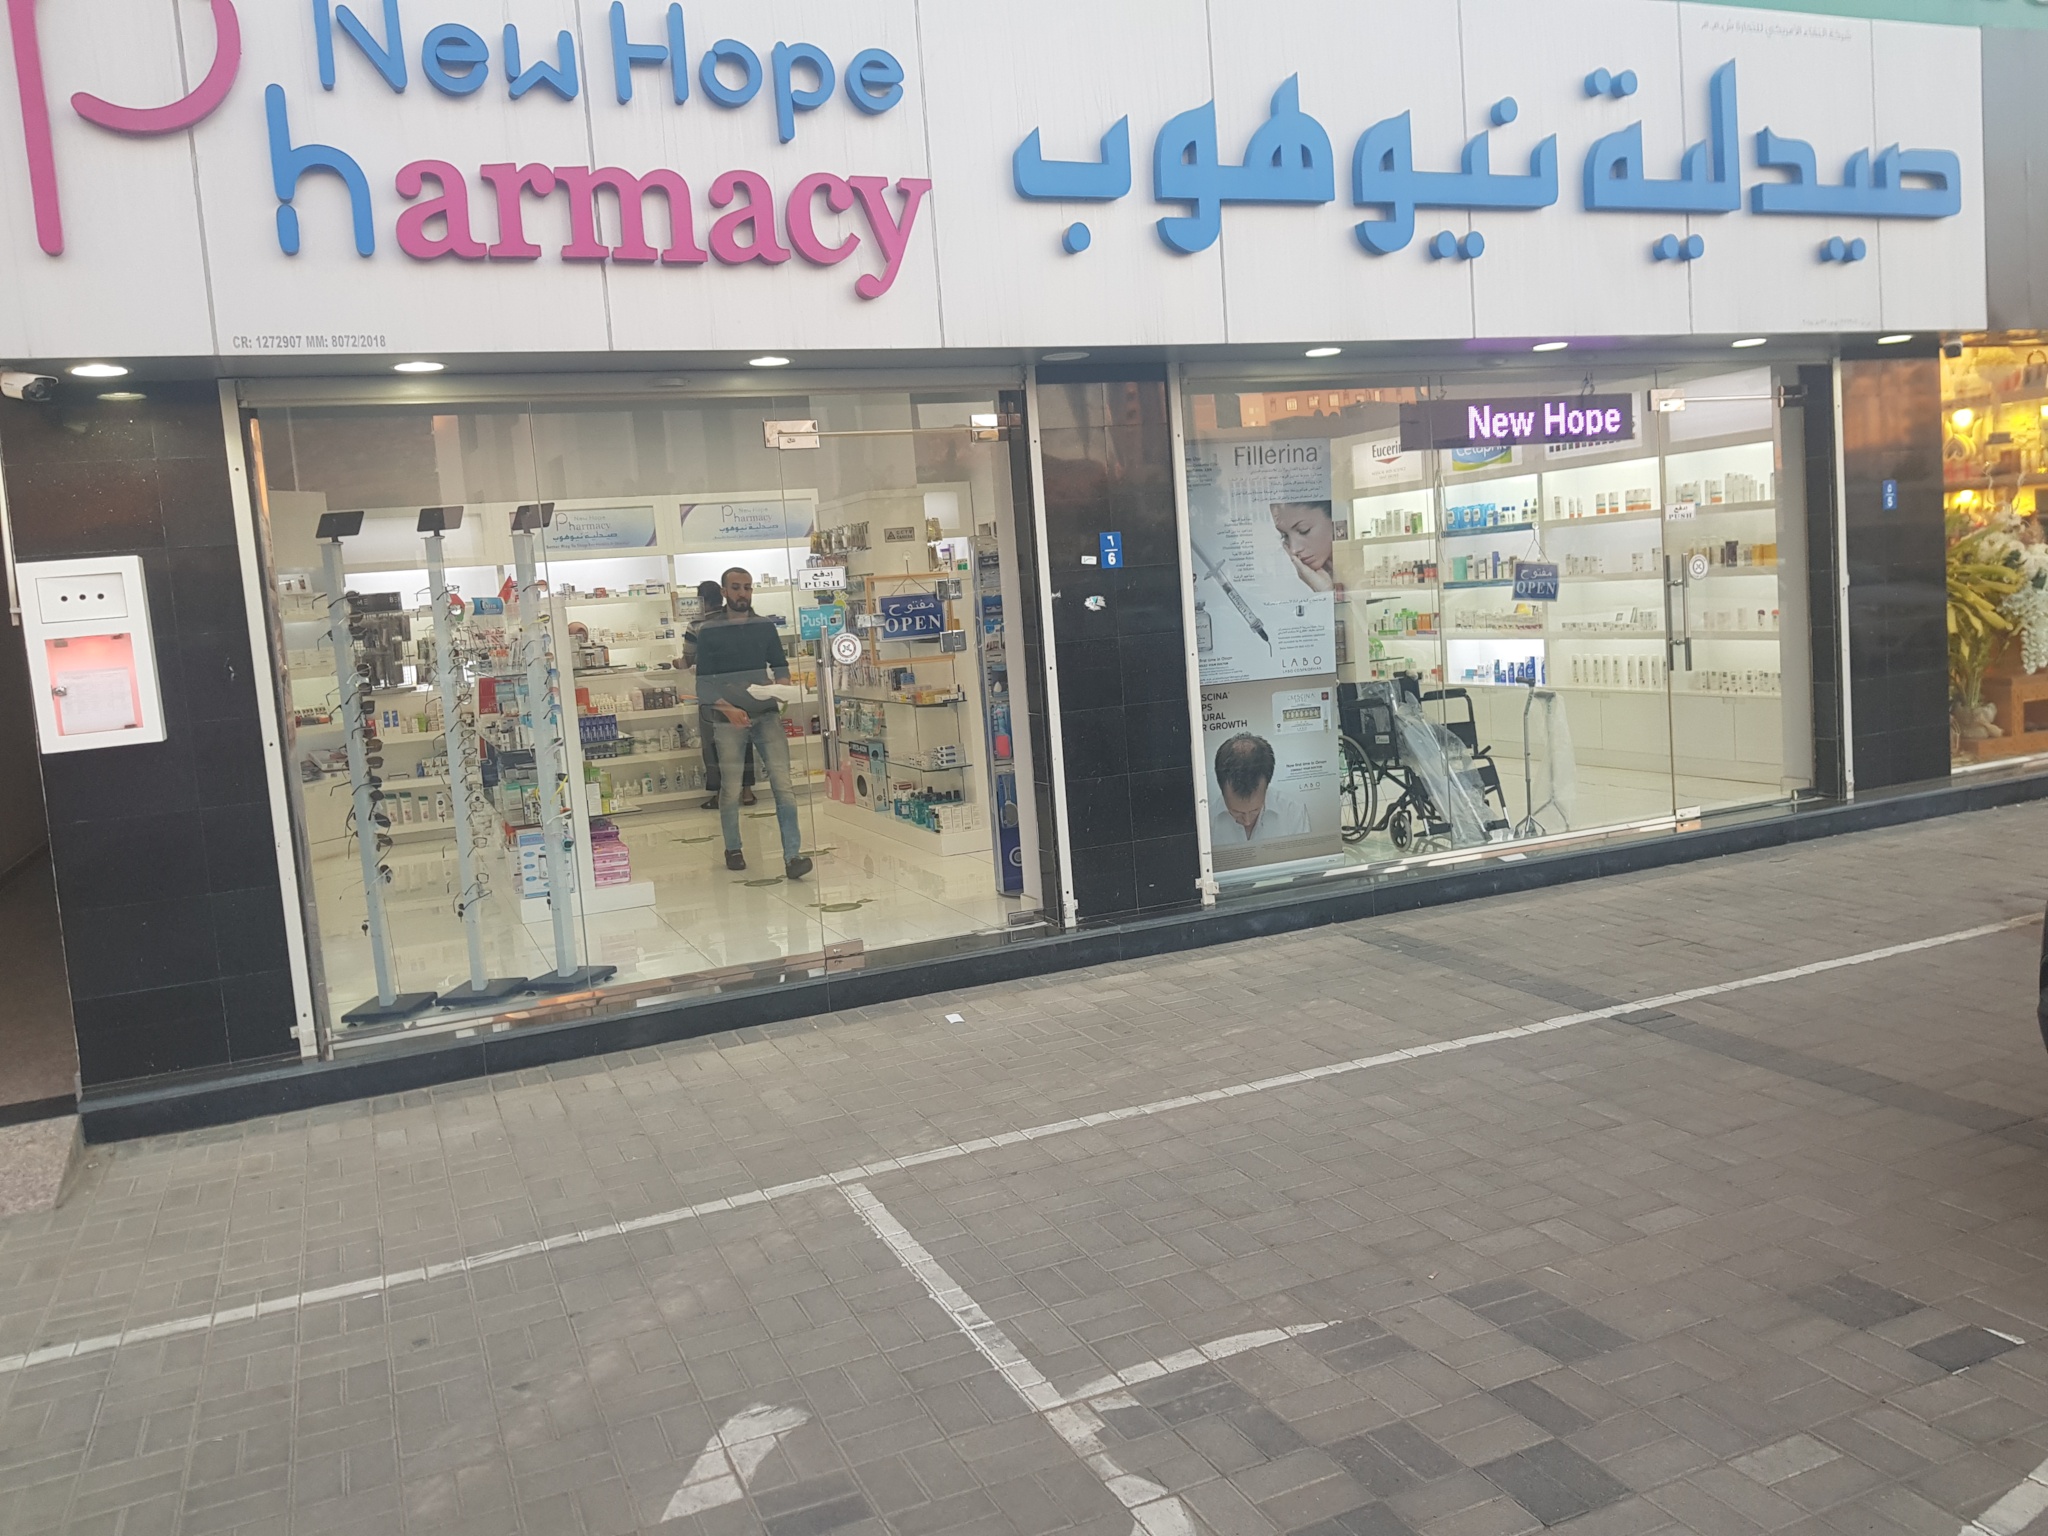 New Hope Pharmacy